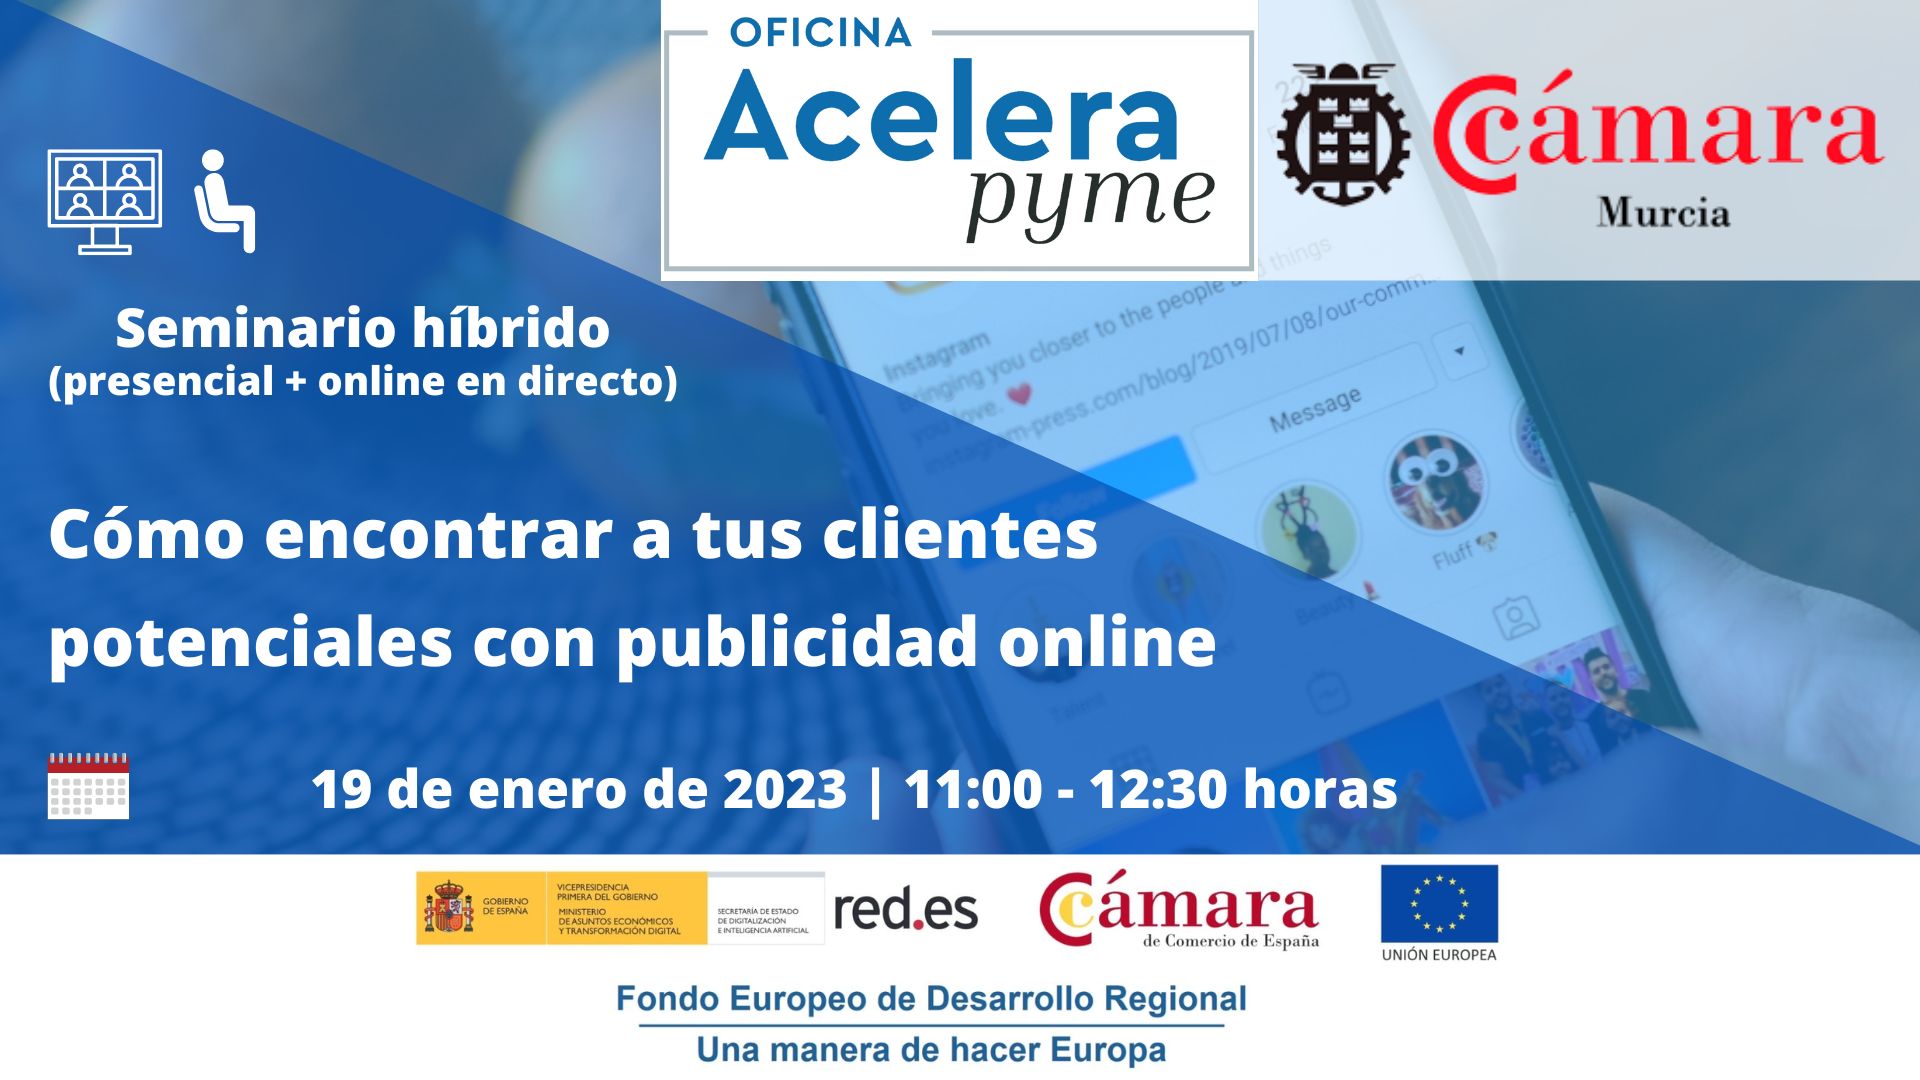 Oficina Acelera Pyme | Cómo encontrar tus clientes potenciales con publicidad online | Seminario | Camara de Comercio de Murcia